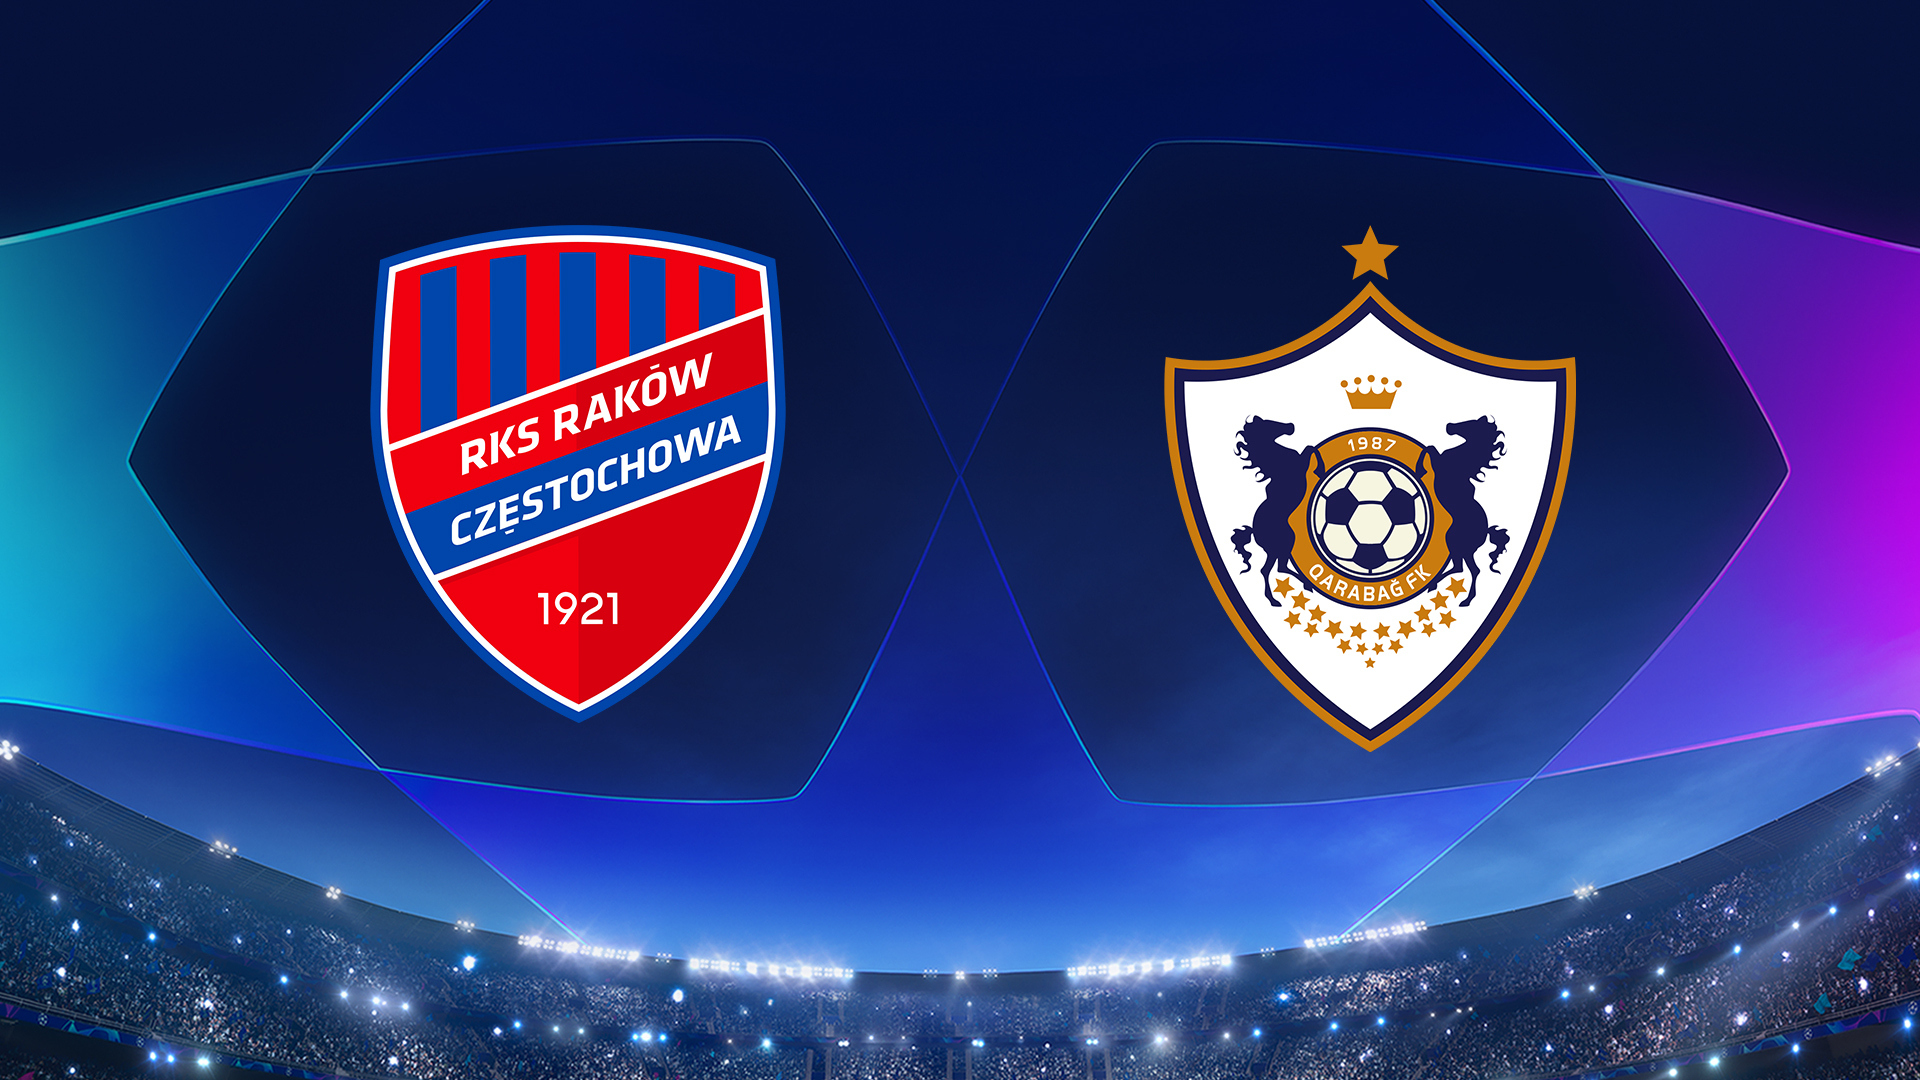 Watch UEFA Champions League: Raków Częstochowa vs. Qarabag - Full show ...